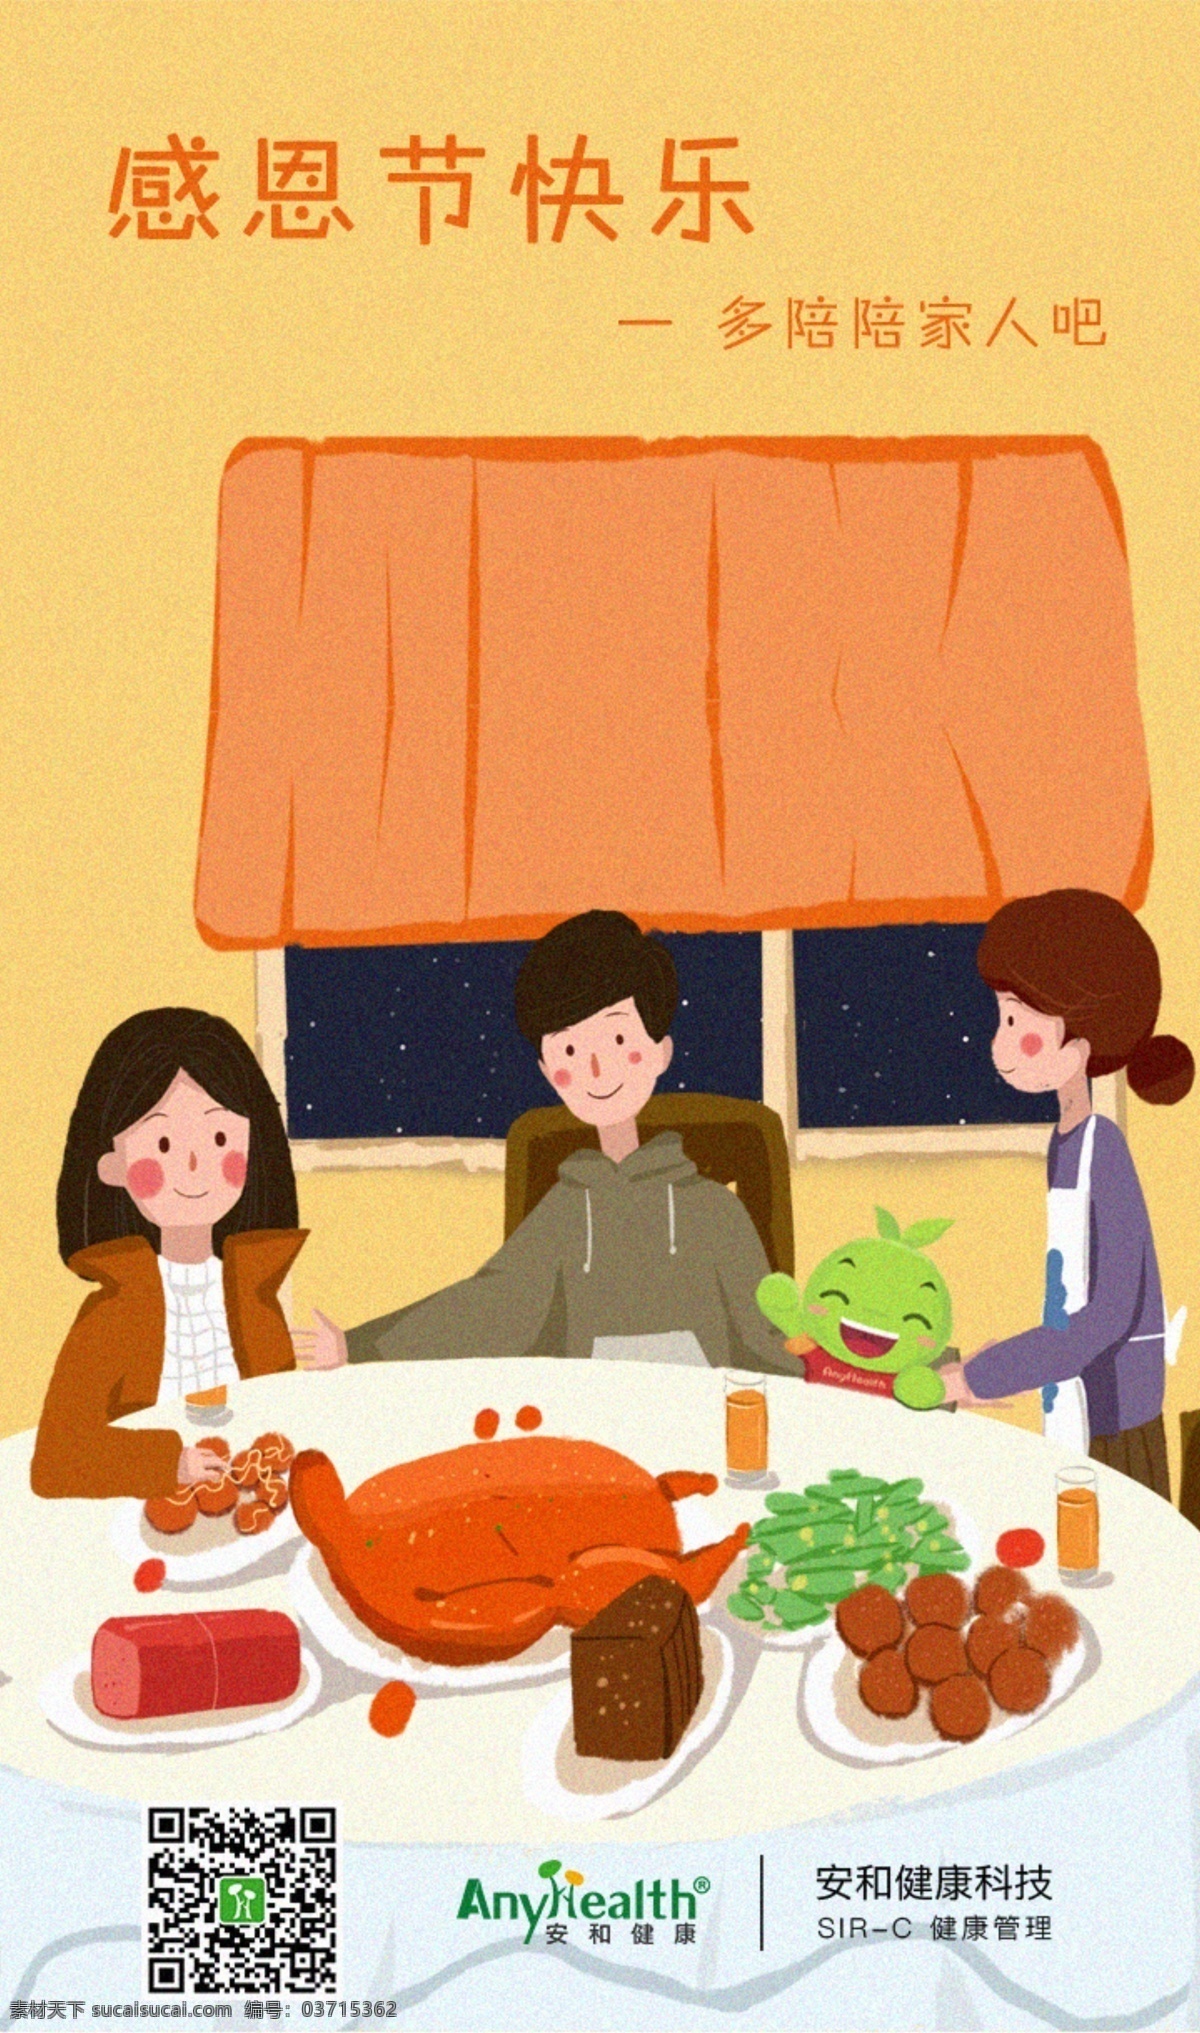 感恩节 快乐 陪伴 家人 海报 插画 节日 卡通 手绘